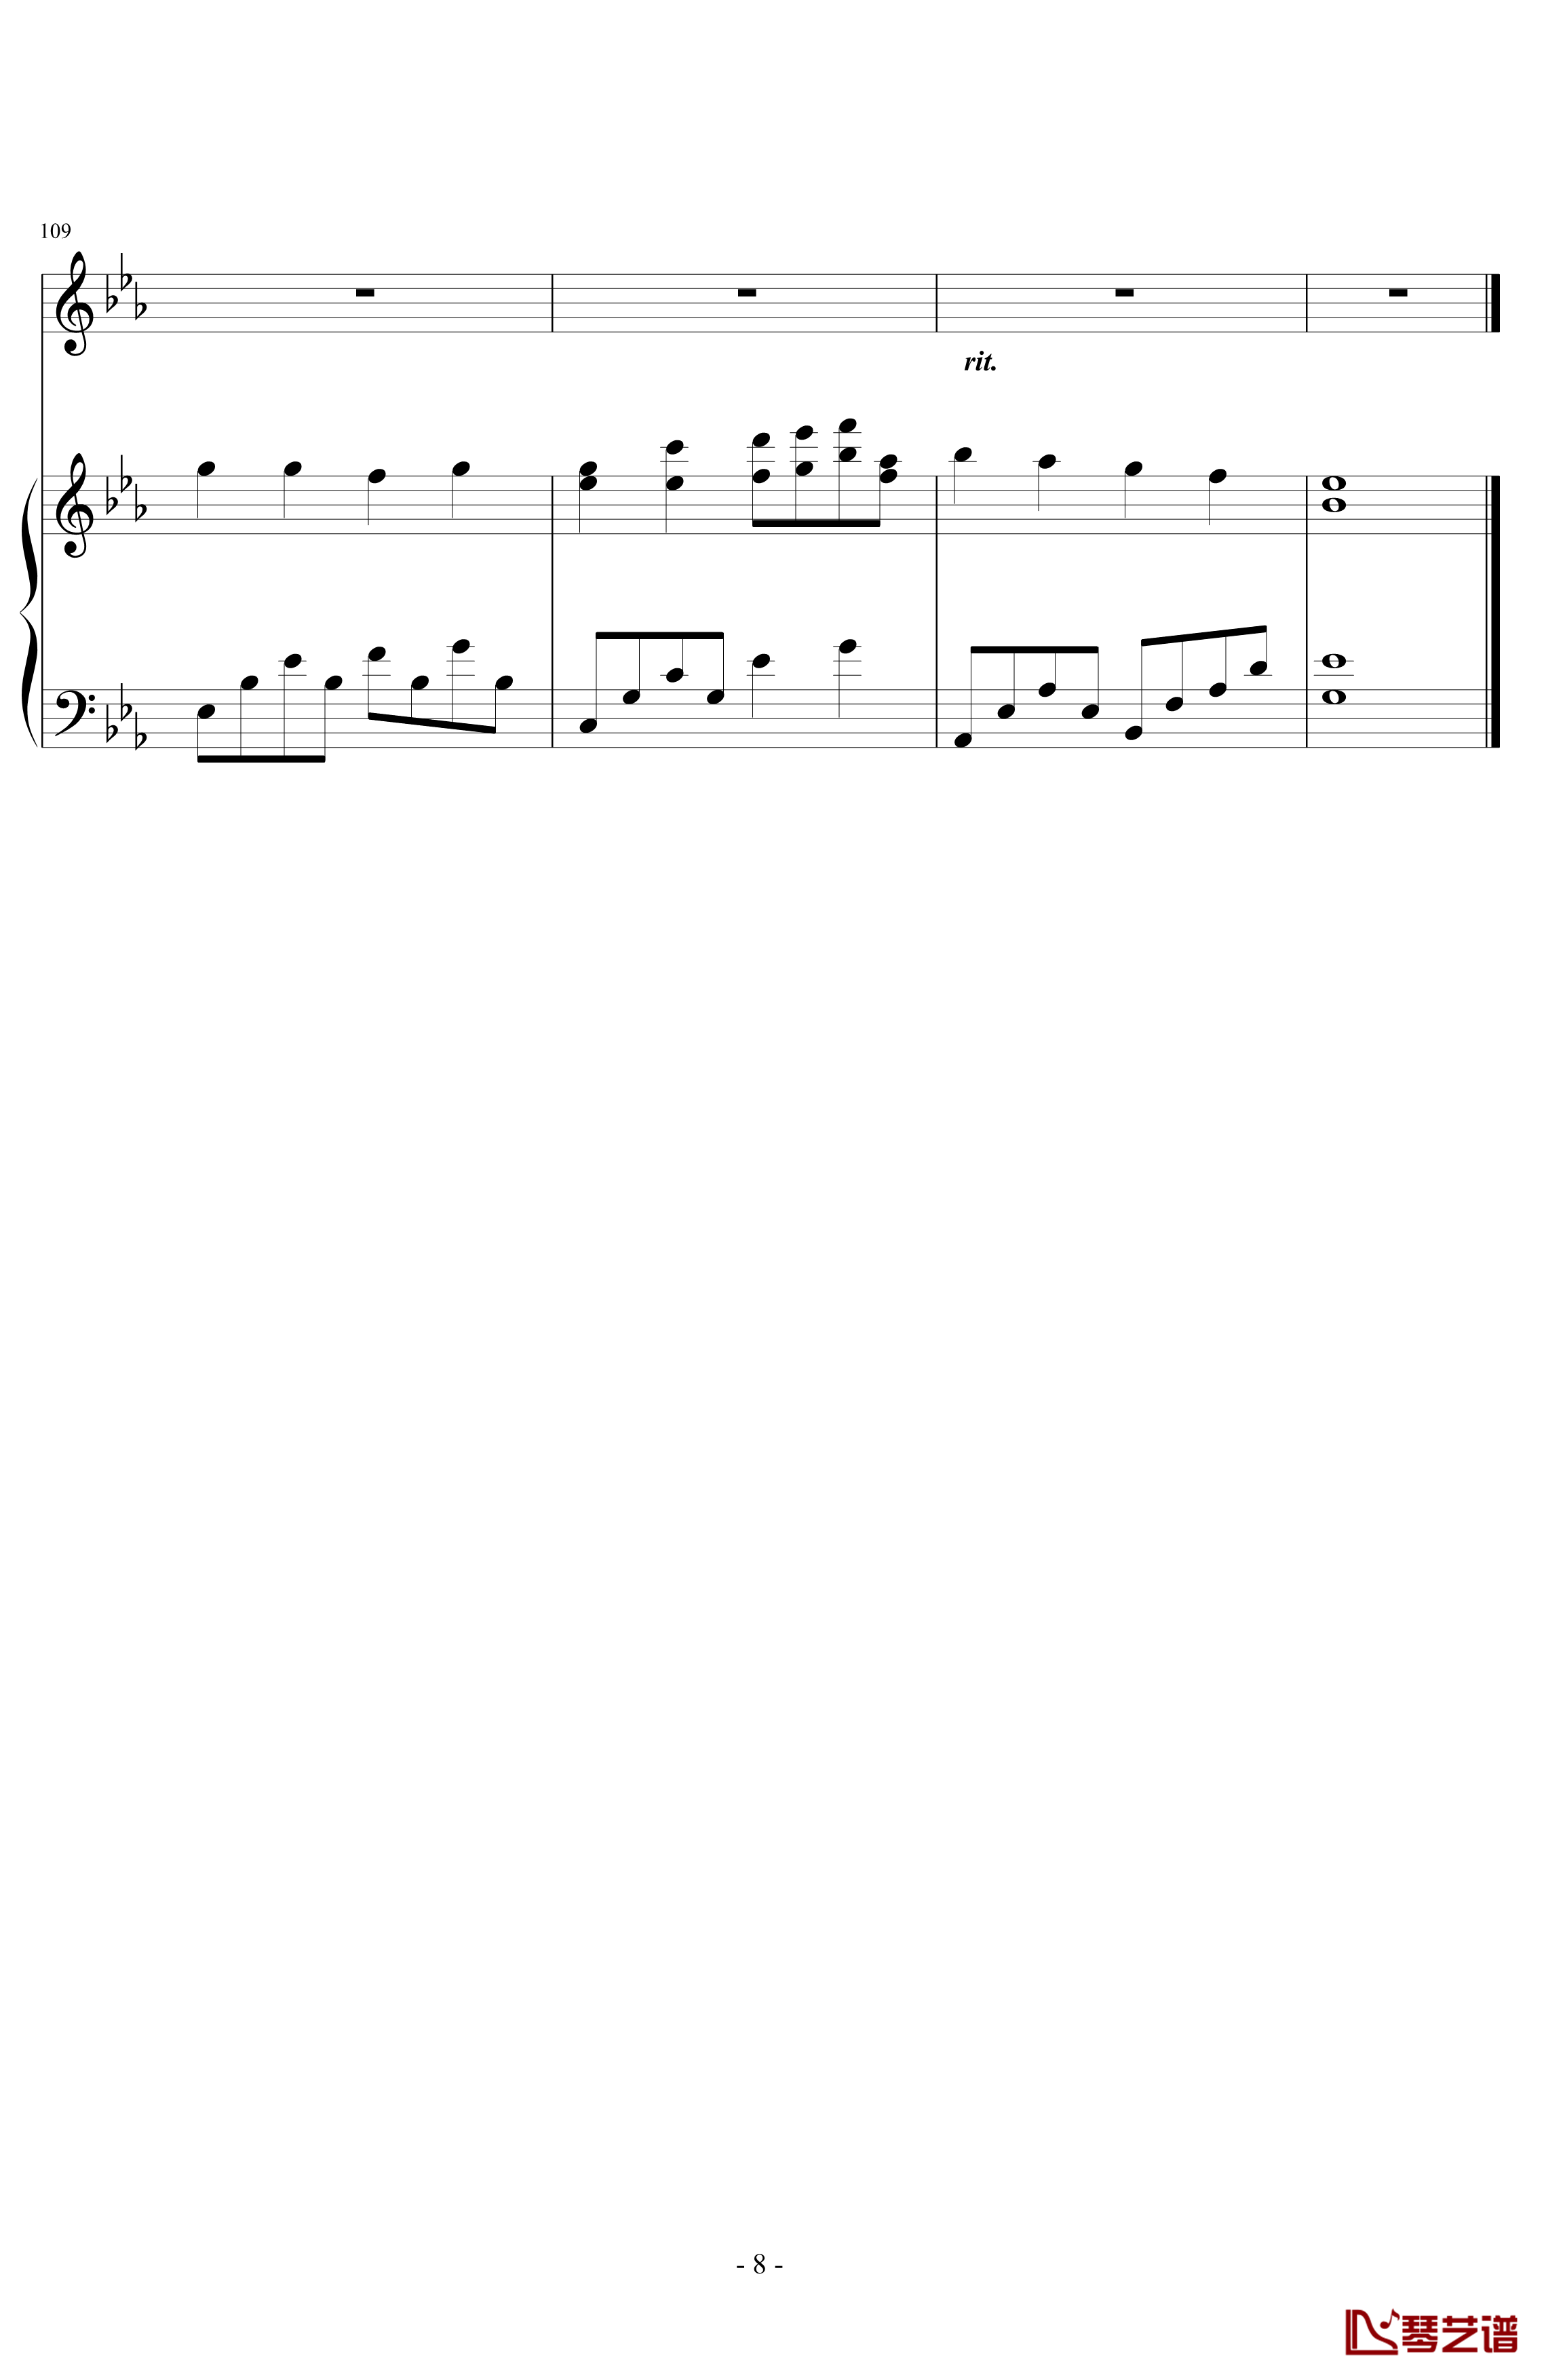 三年级二班钢琴谱-潇洒星空8